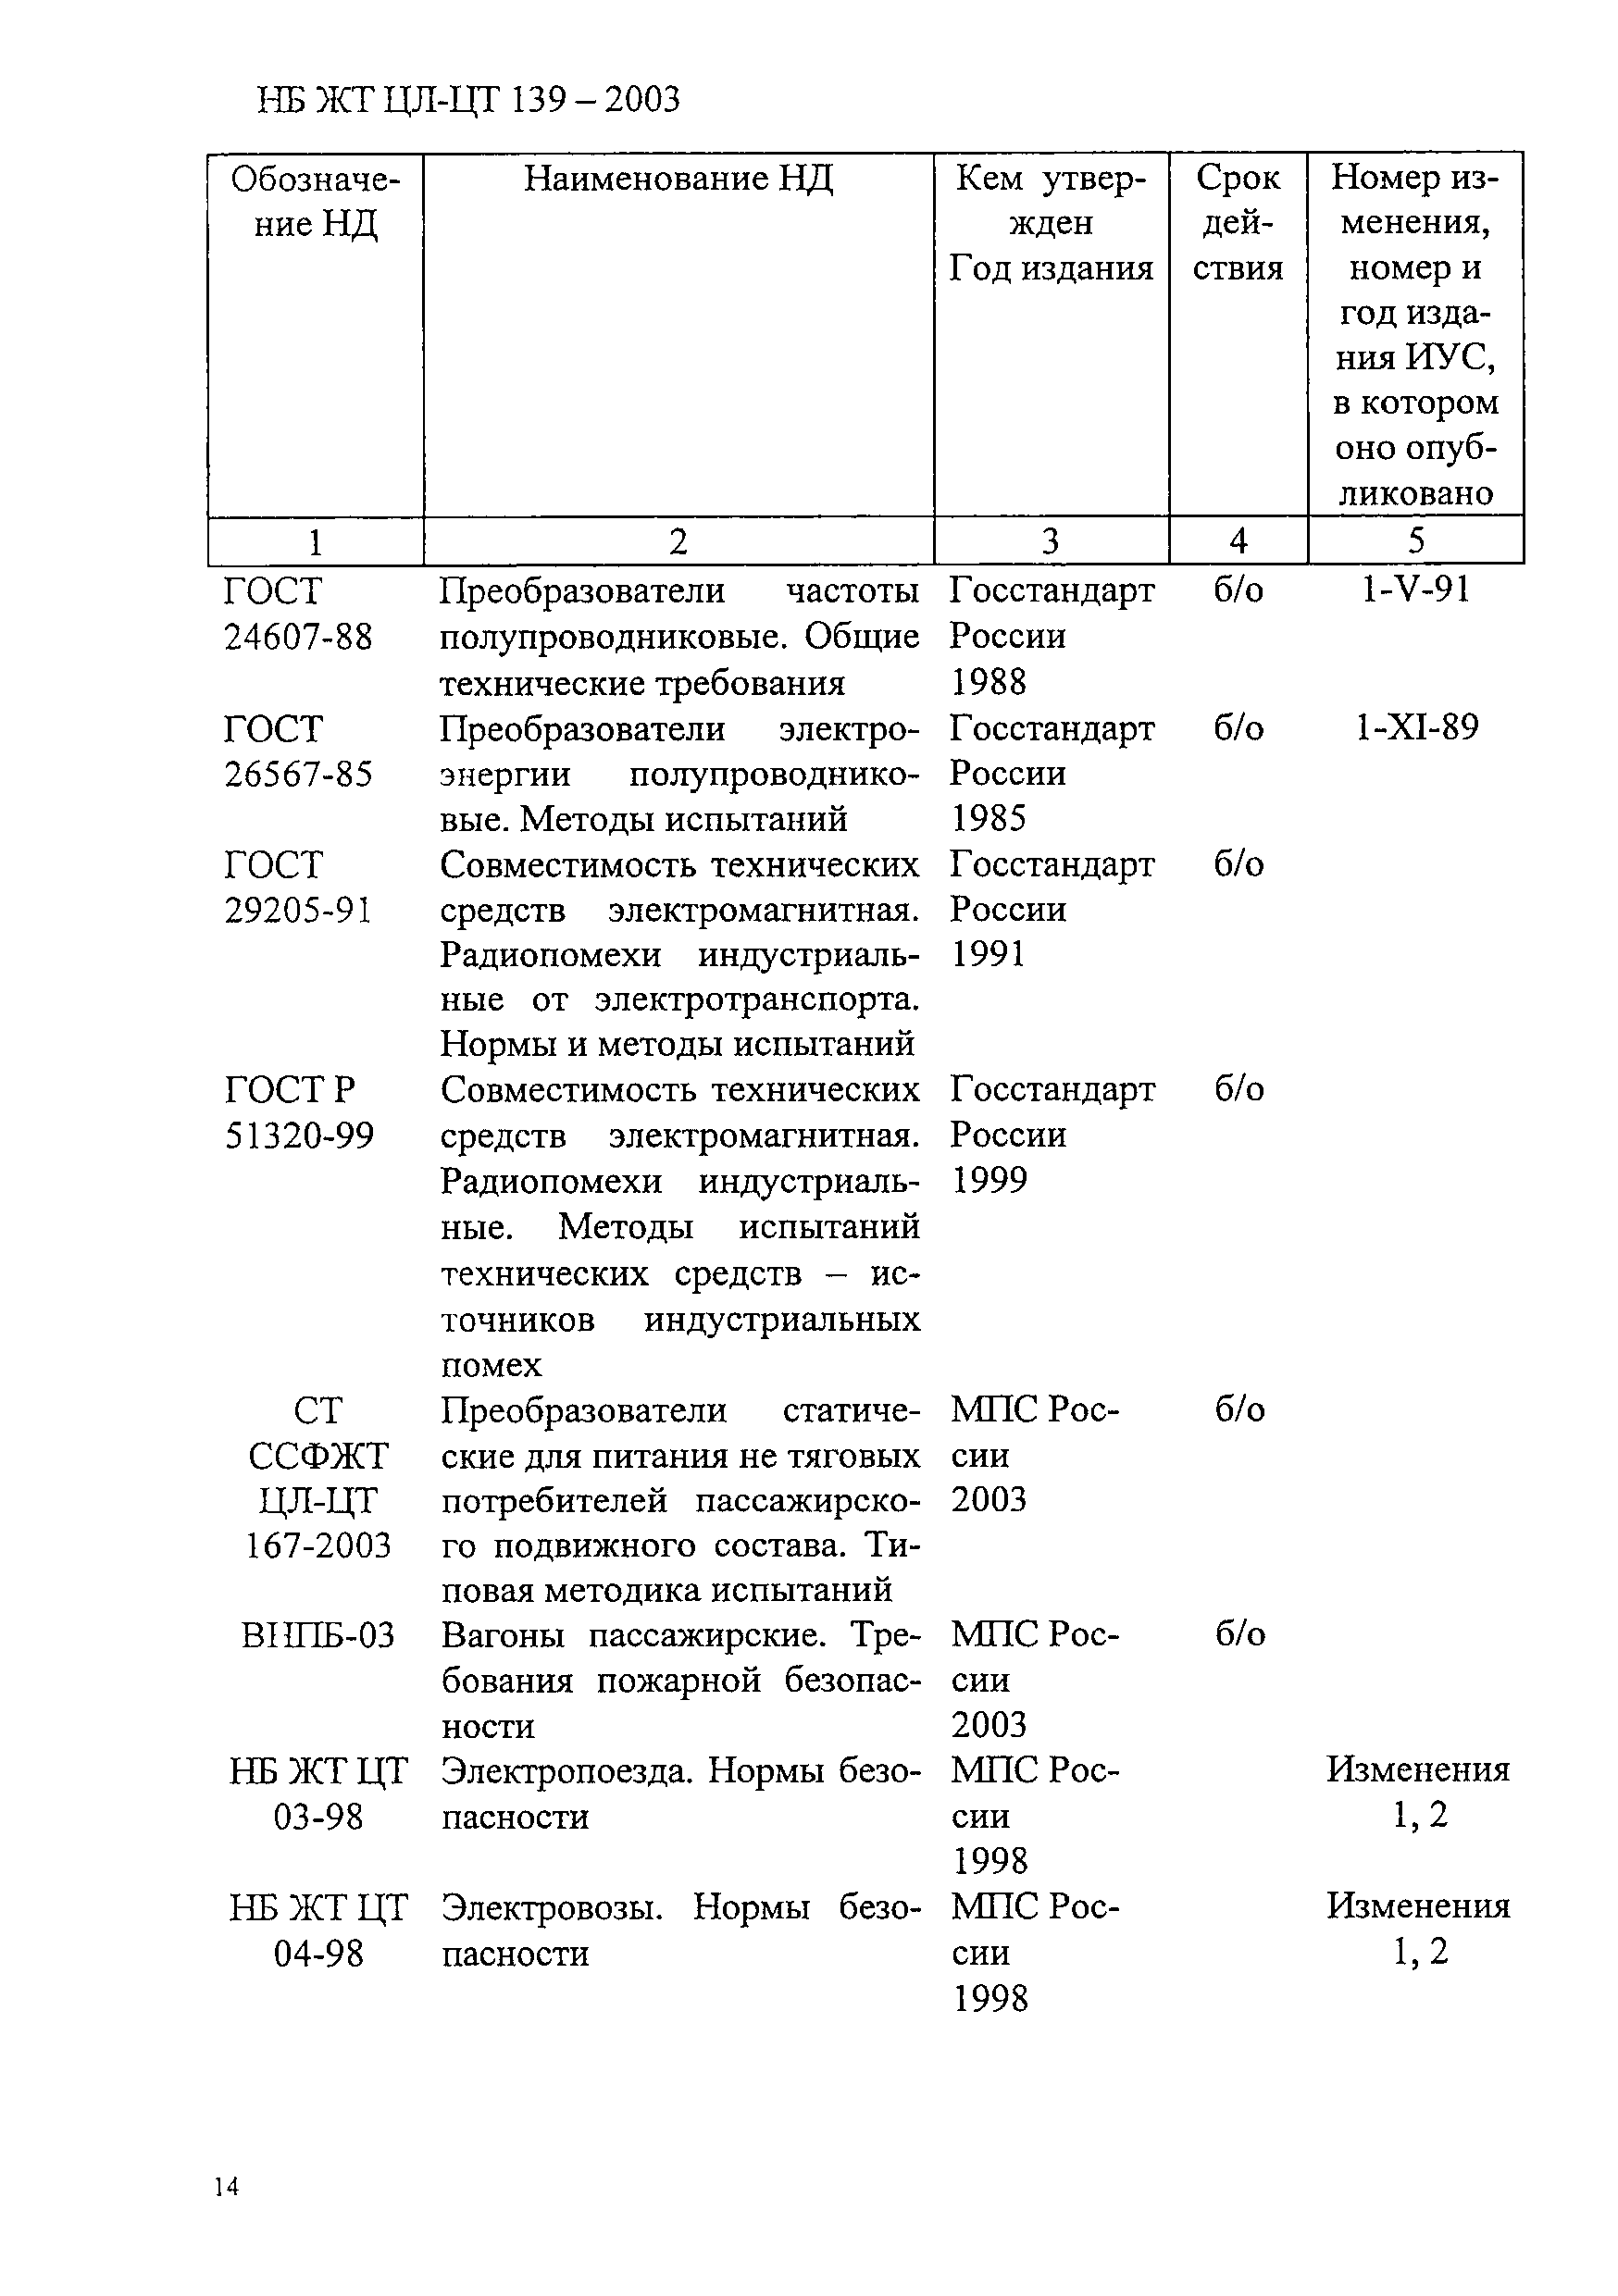 НБ ЖТ ЦЛ-ЦТ 139-2003